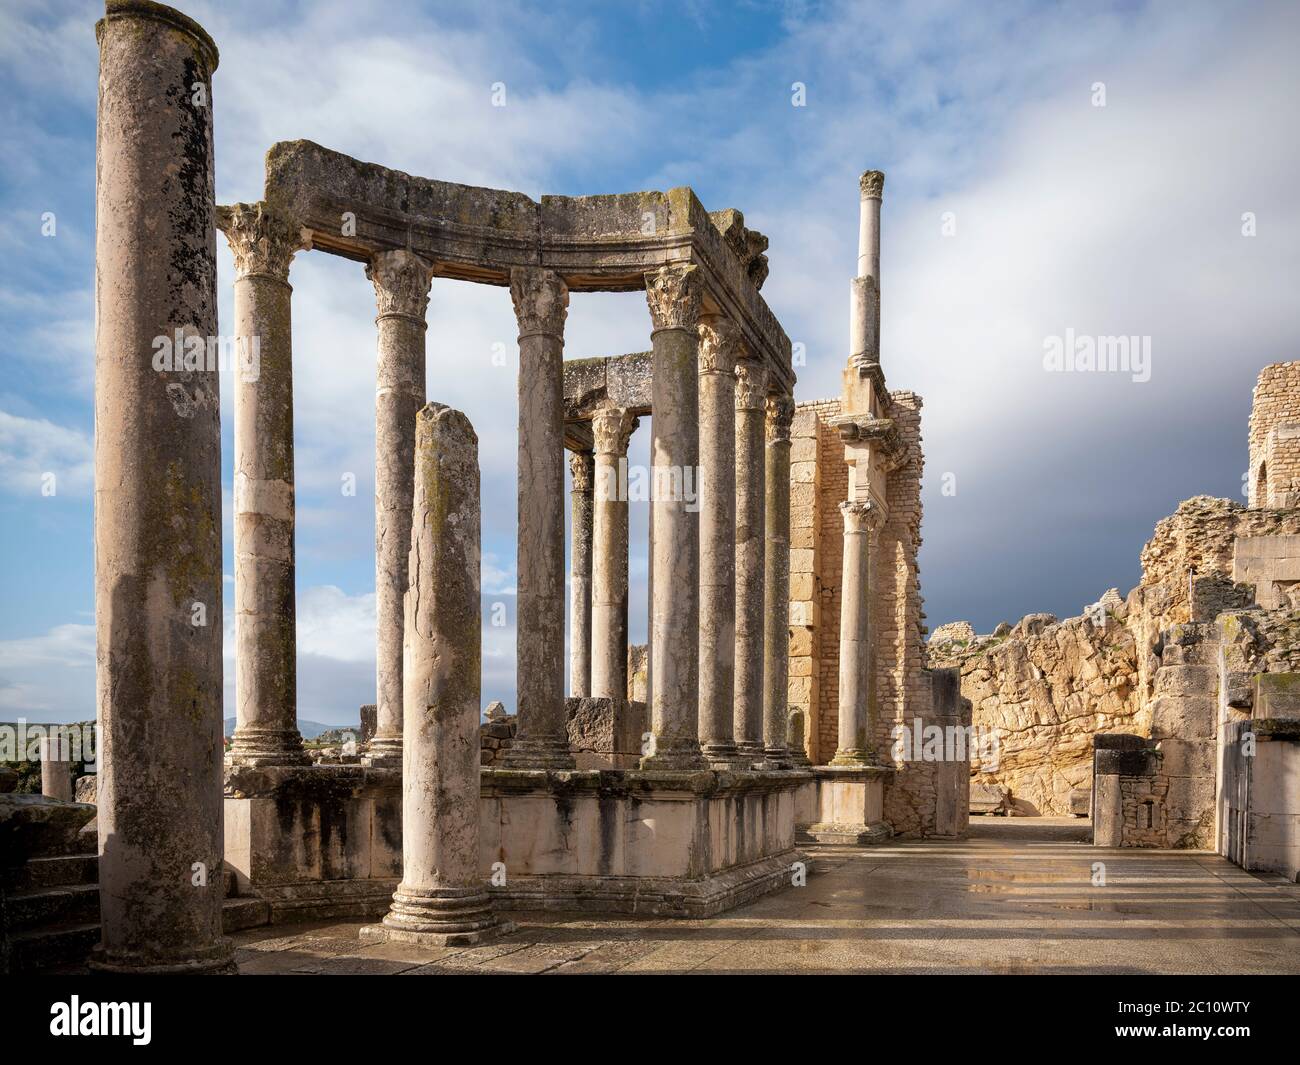 Die antike römische archäologische Stätte von Dougga (Thugga), Tunesien, mit dramatischen Säulen am Eingang zum gut erhaltenen Amphitheater Stockfoto